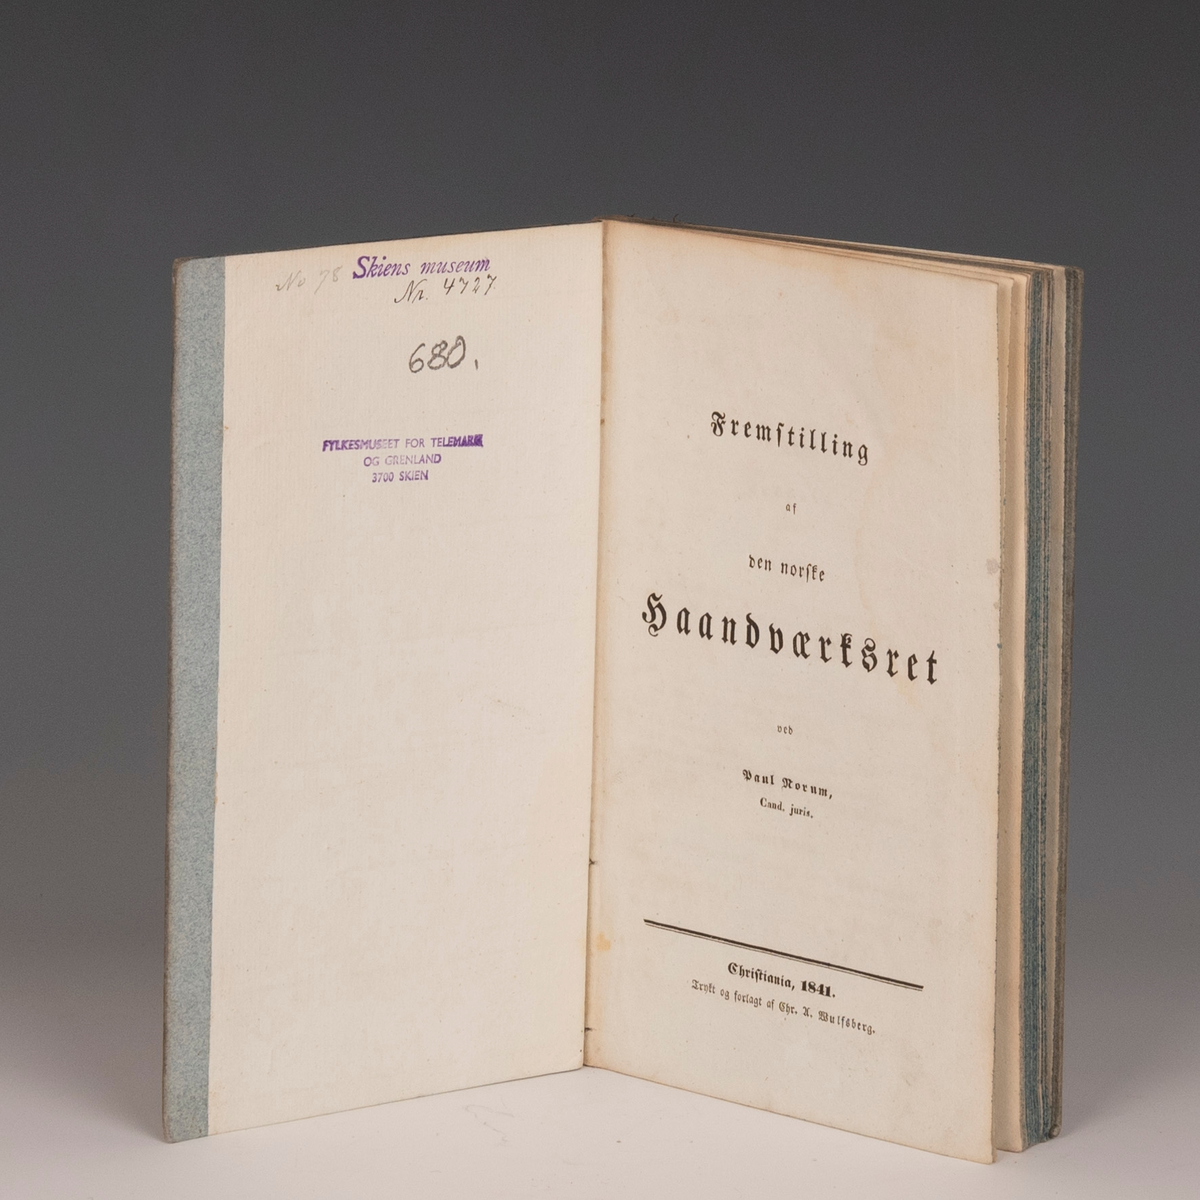 Fra protokollen: "Fremstilling af den norske Haandværksret" av Paul Norum. Kristiania 1841. 2 bl. + 113 s. 8 vo. Indb.